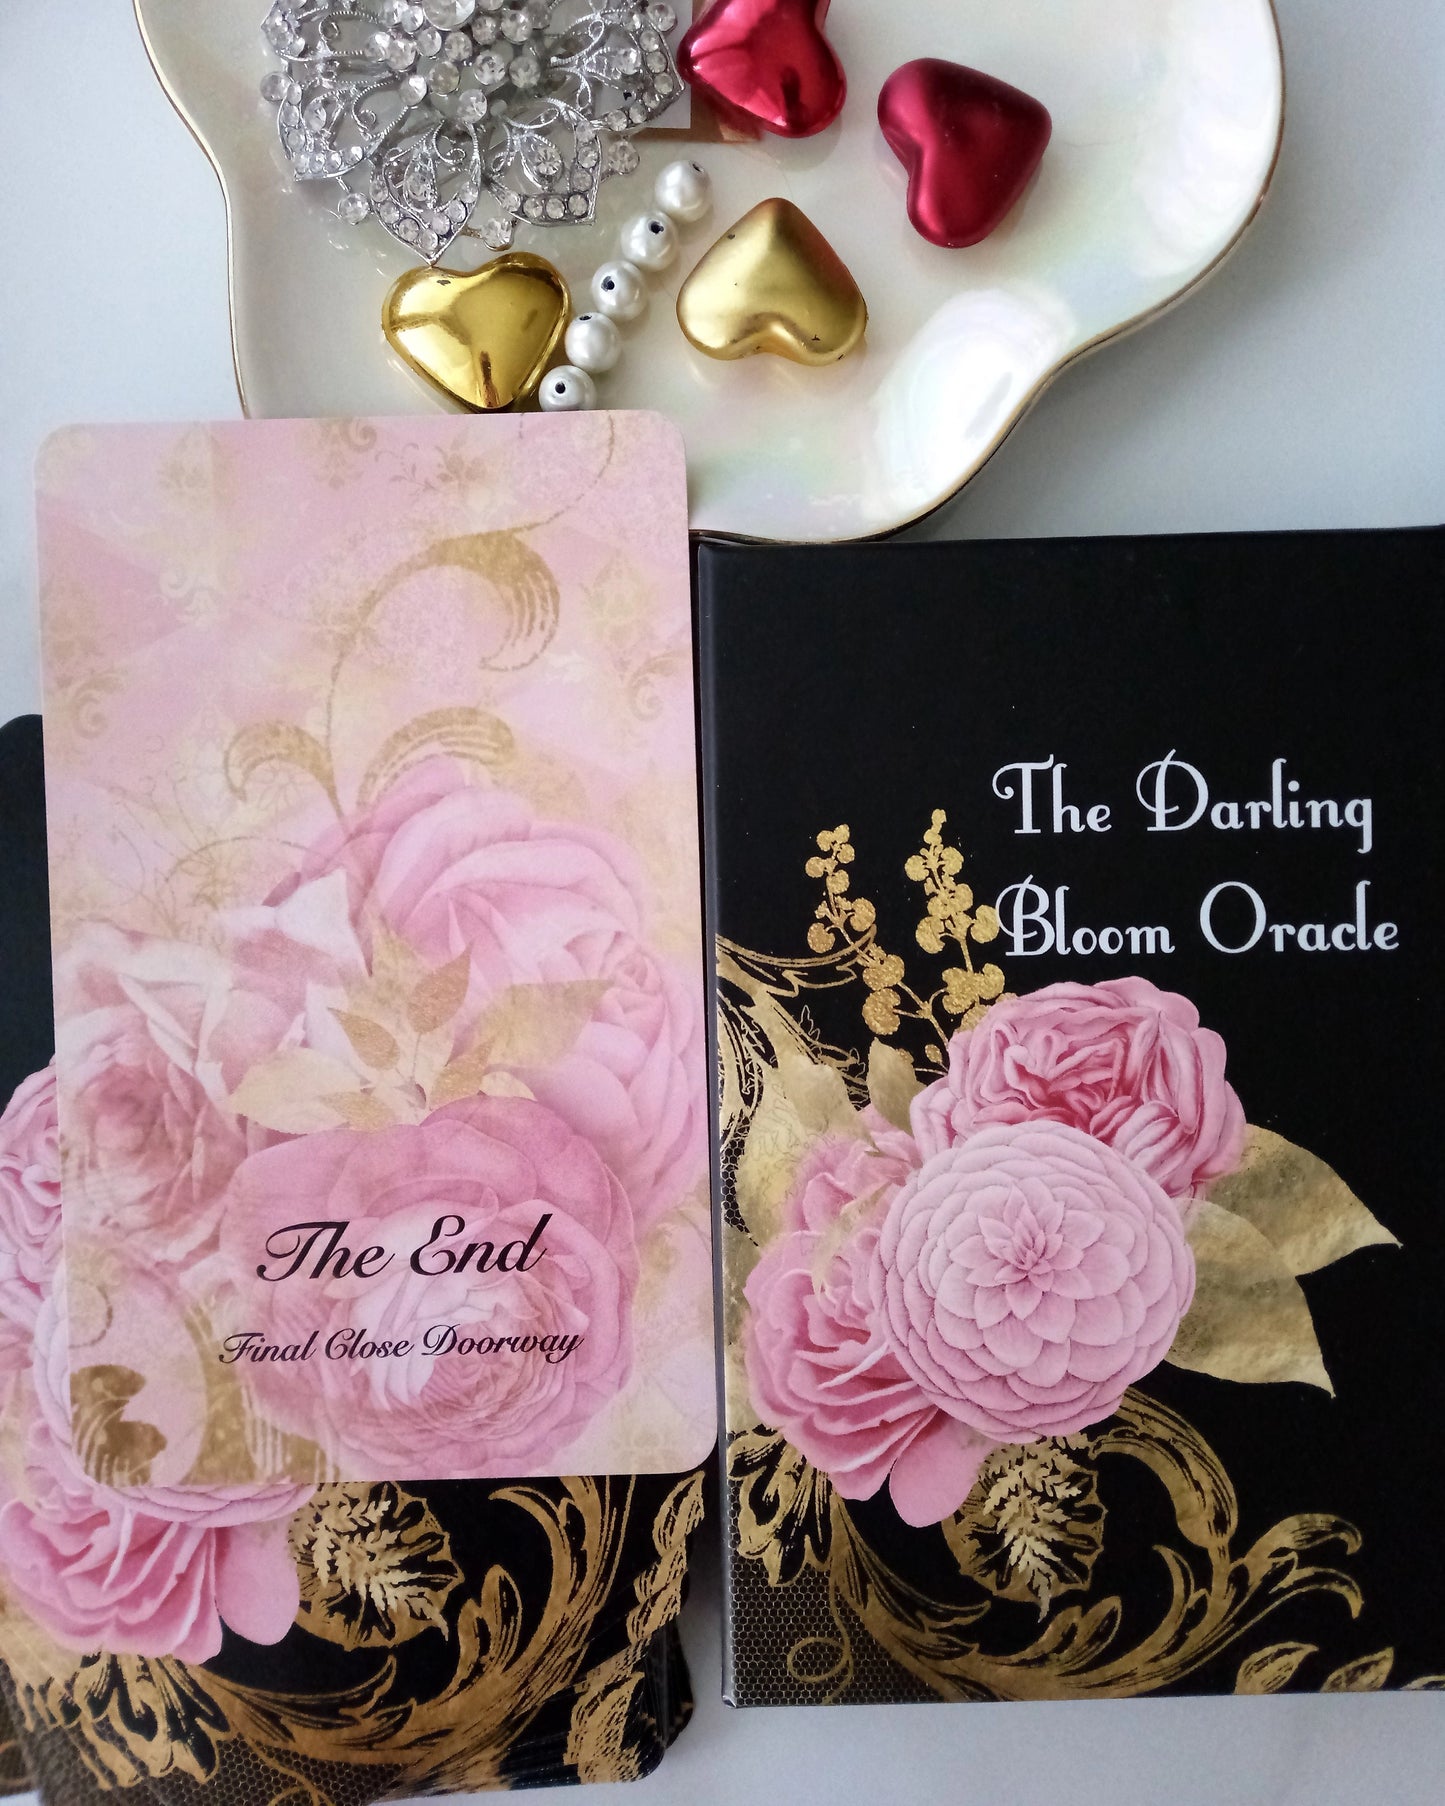 The Darling Bloom Oracle